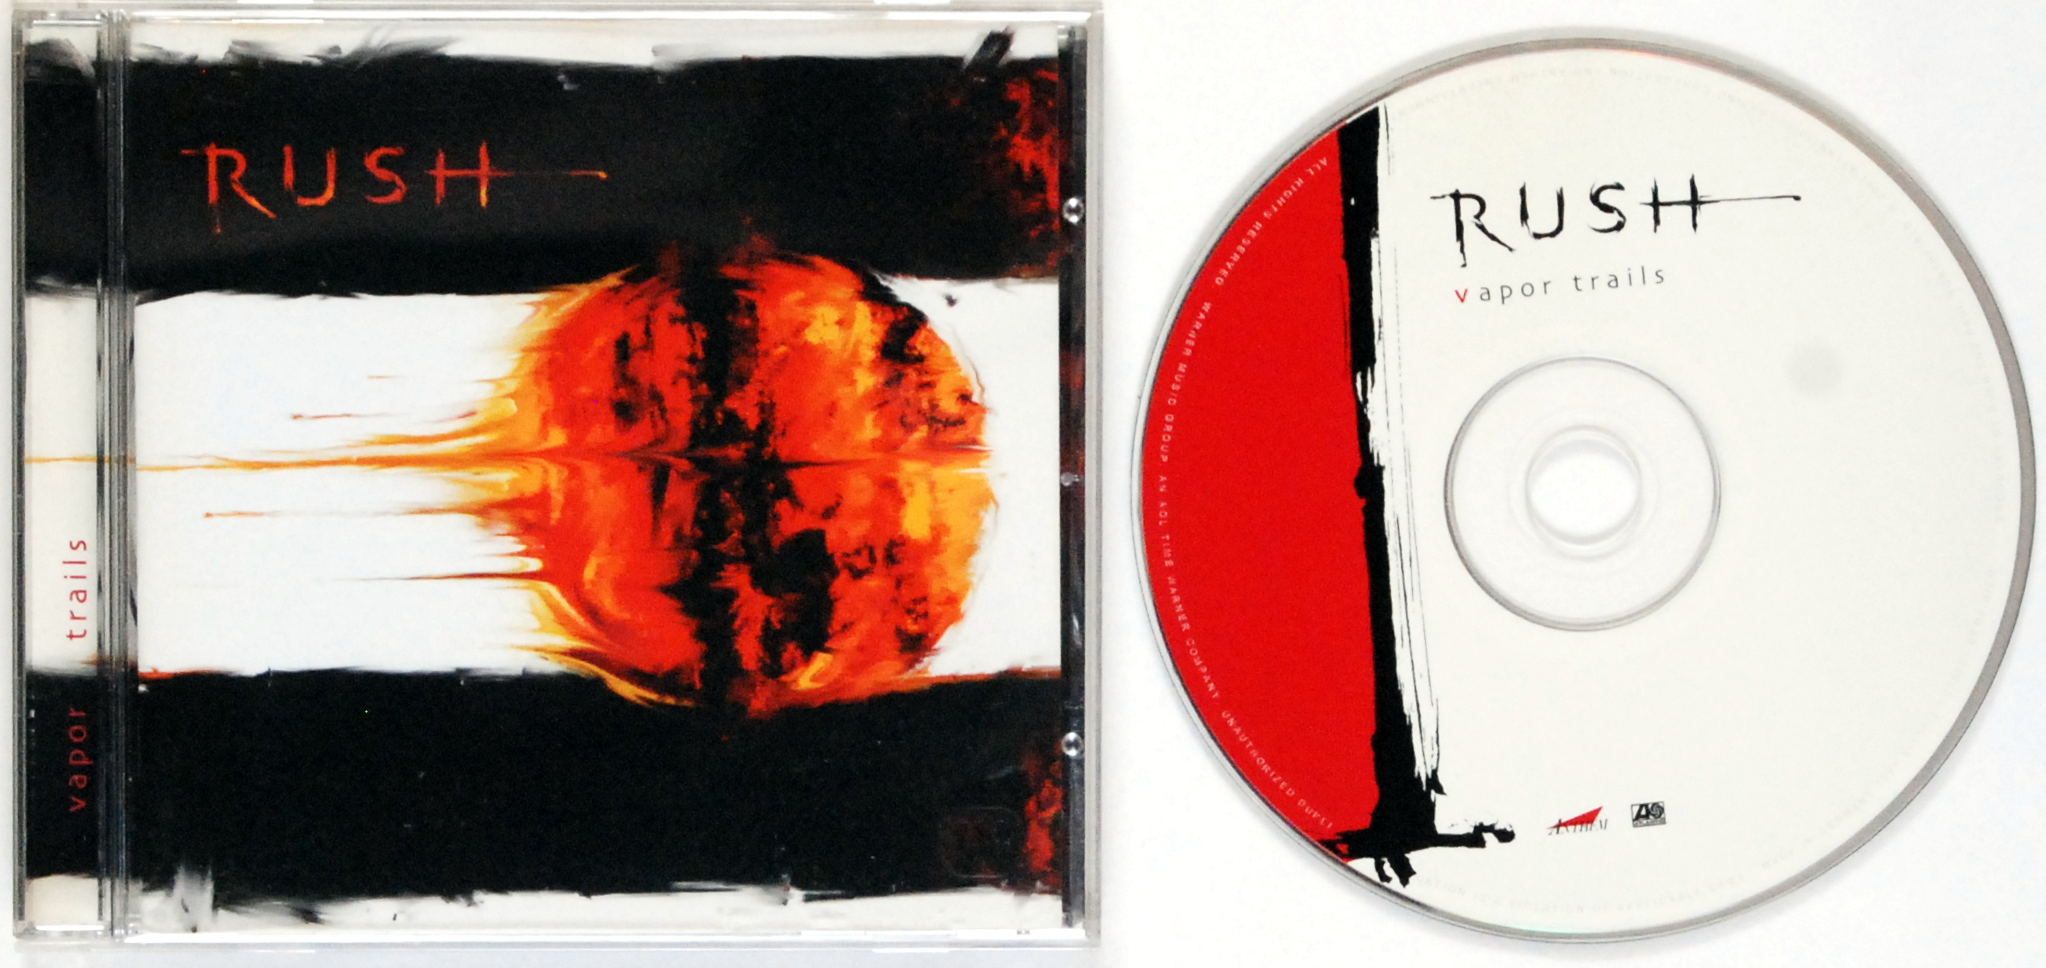 (CD) Rush - Vapor Trails s.BDB